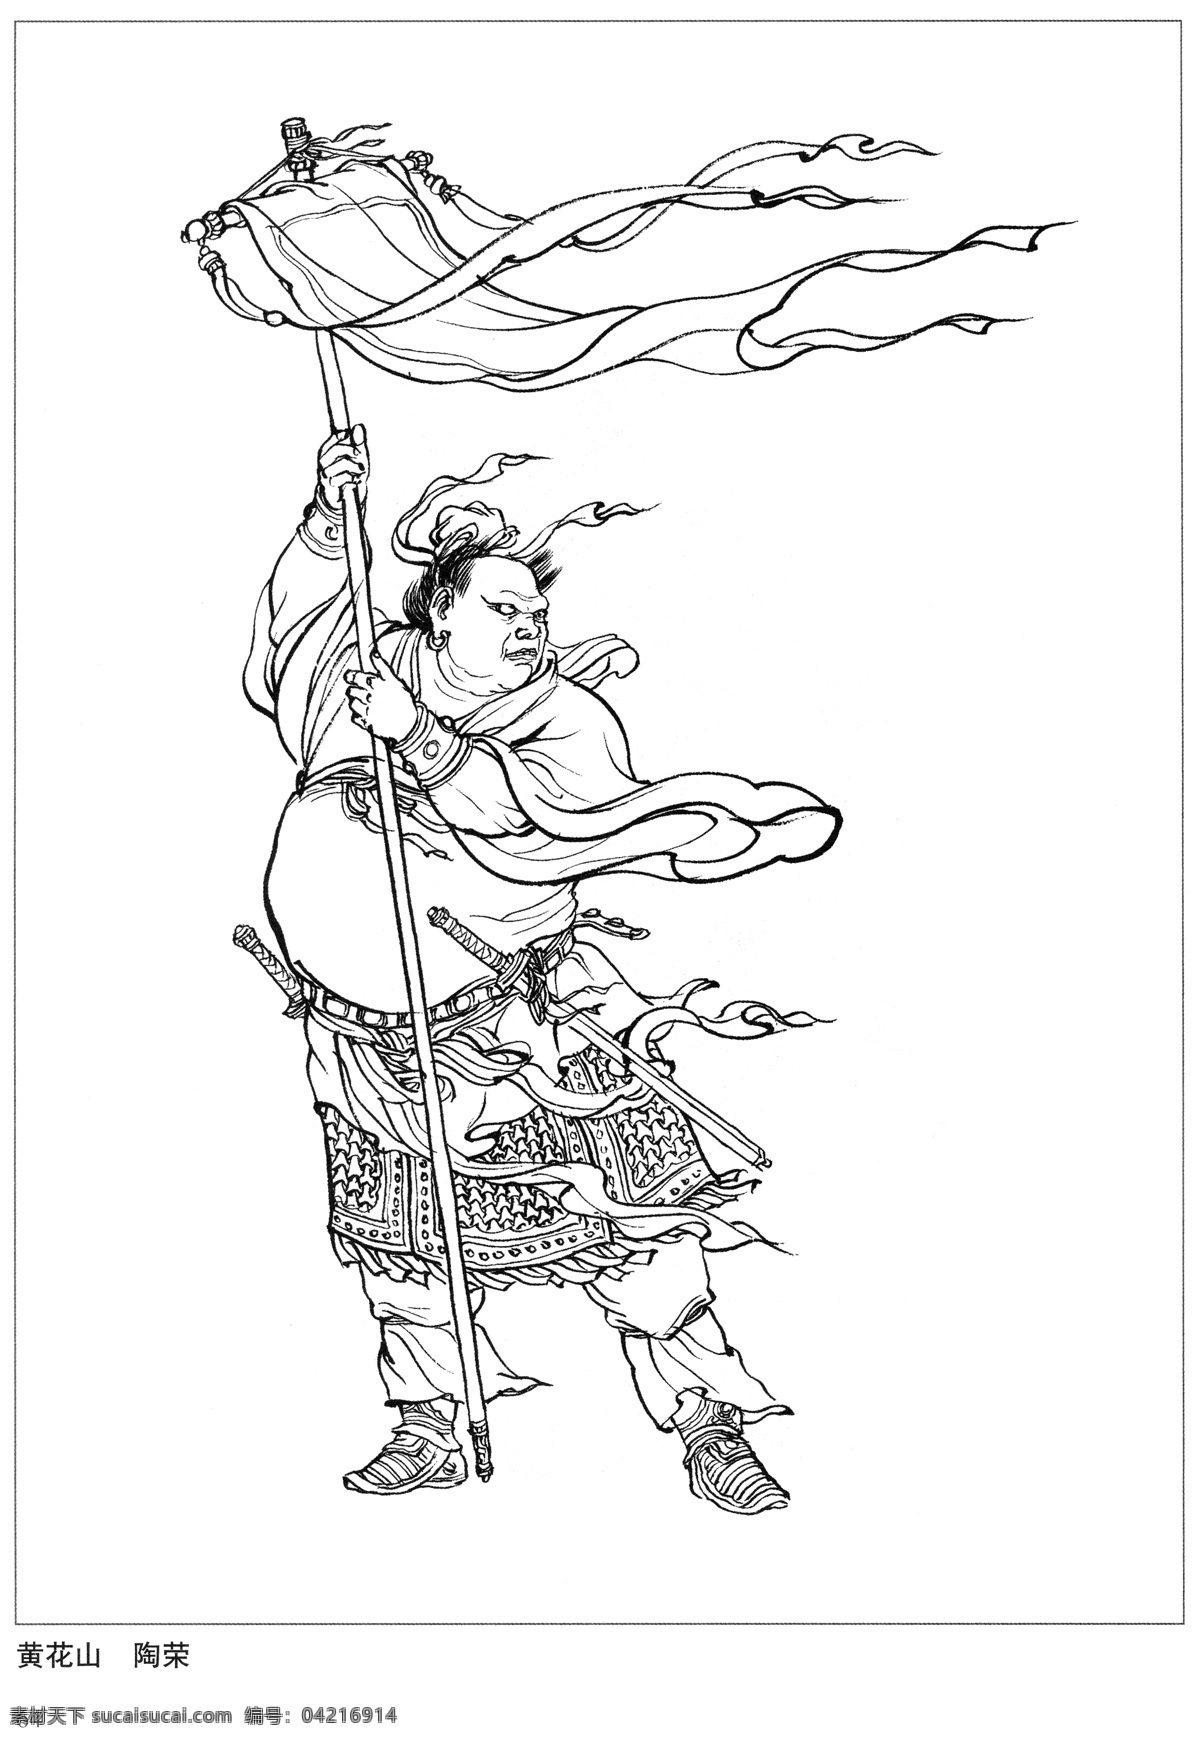 黄花山 陶荣 封神演义 古代 神仙 白描 人物 图 文化艺术 传统文化